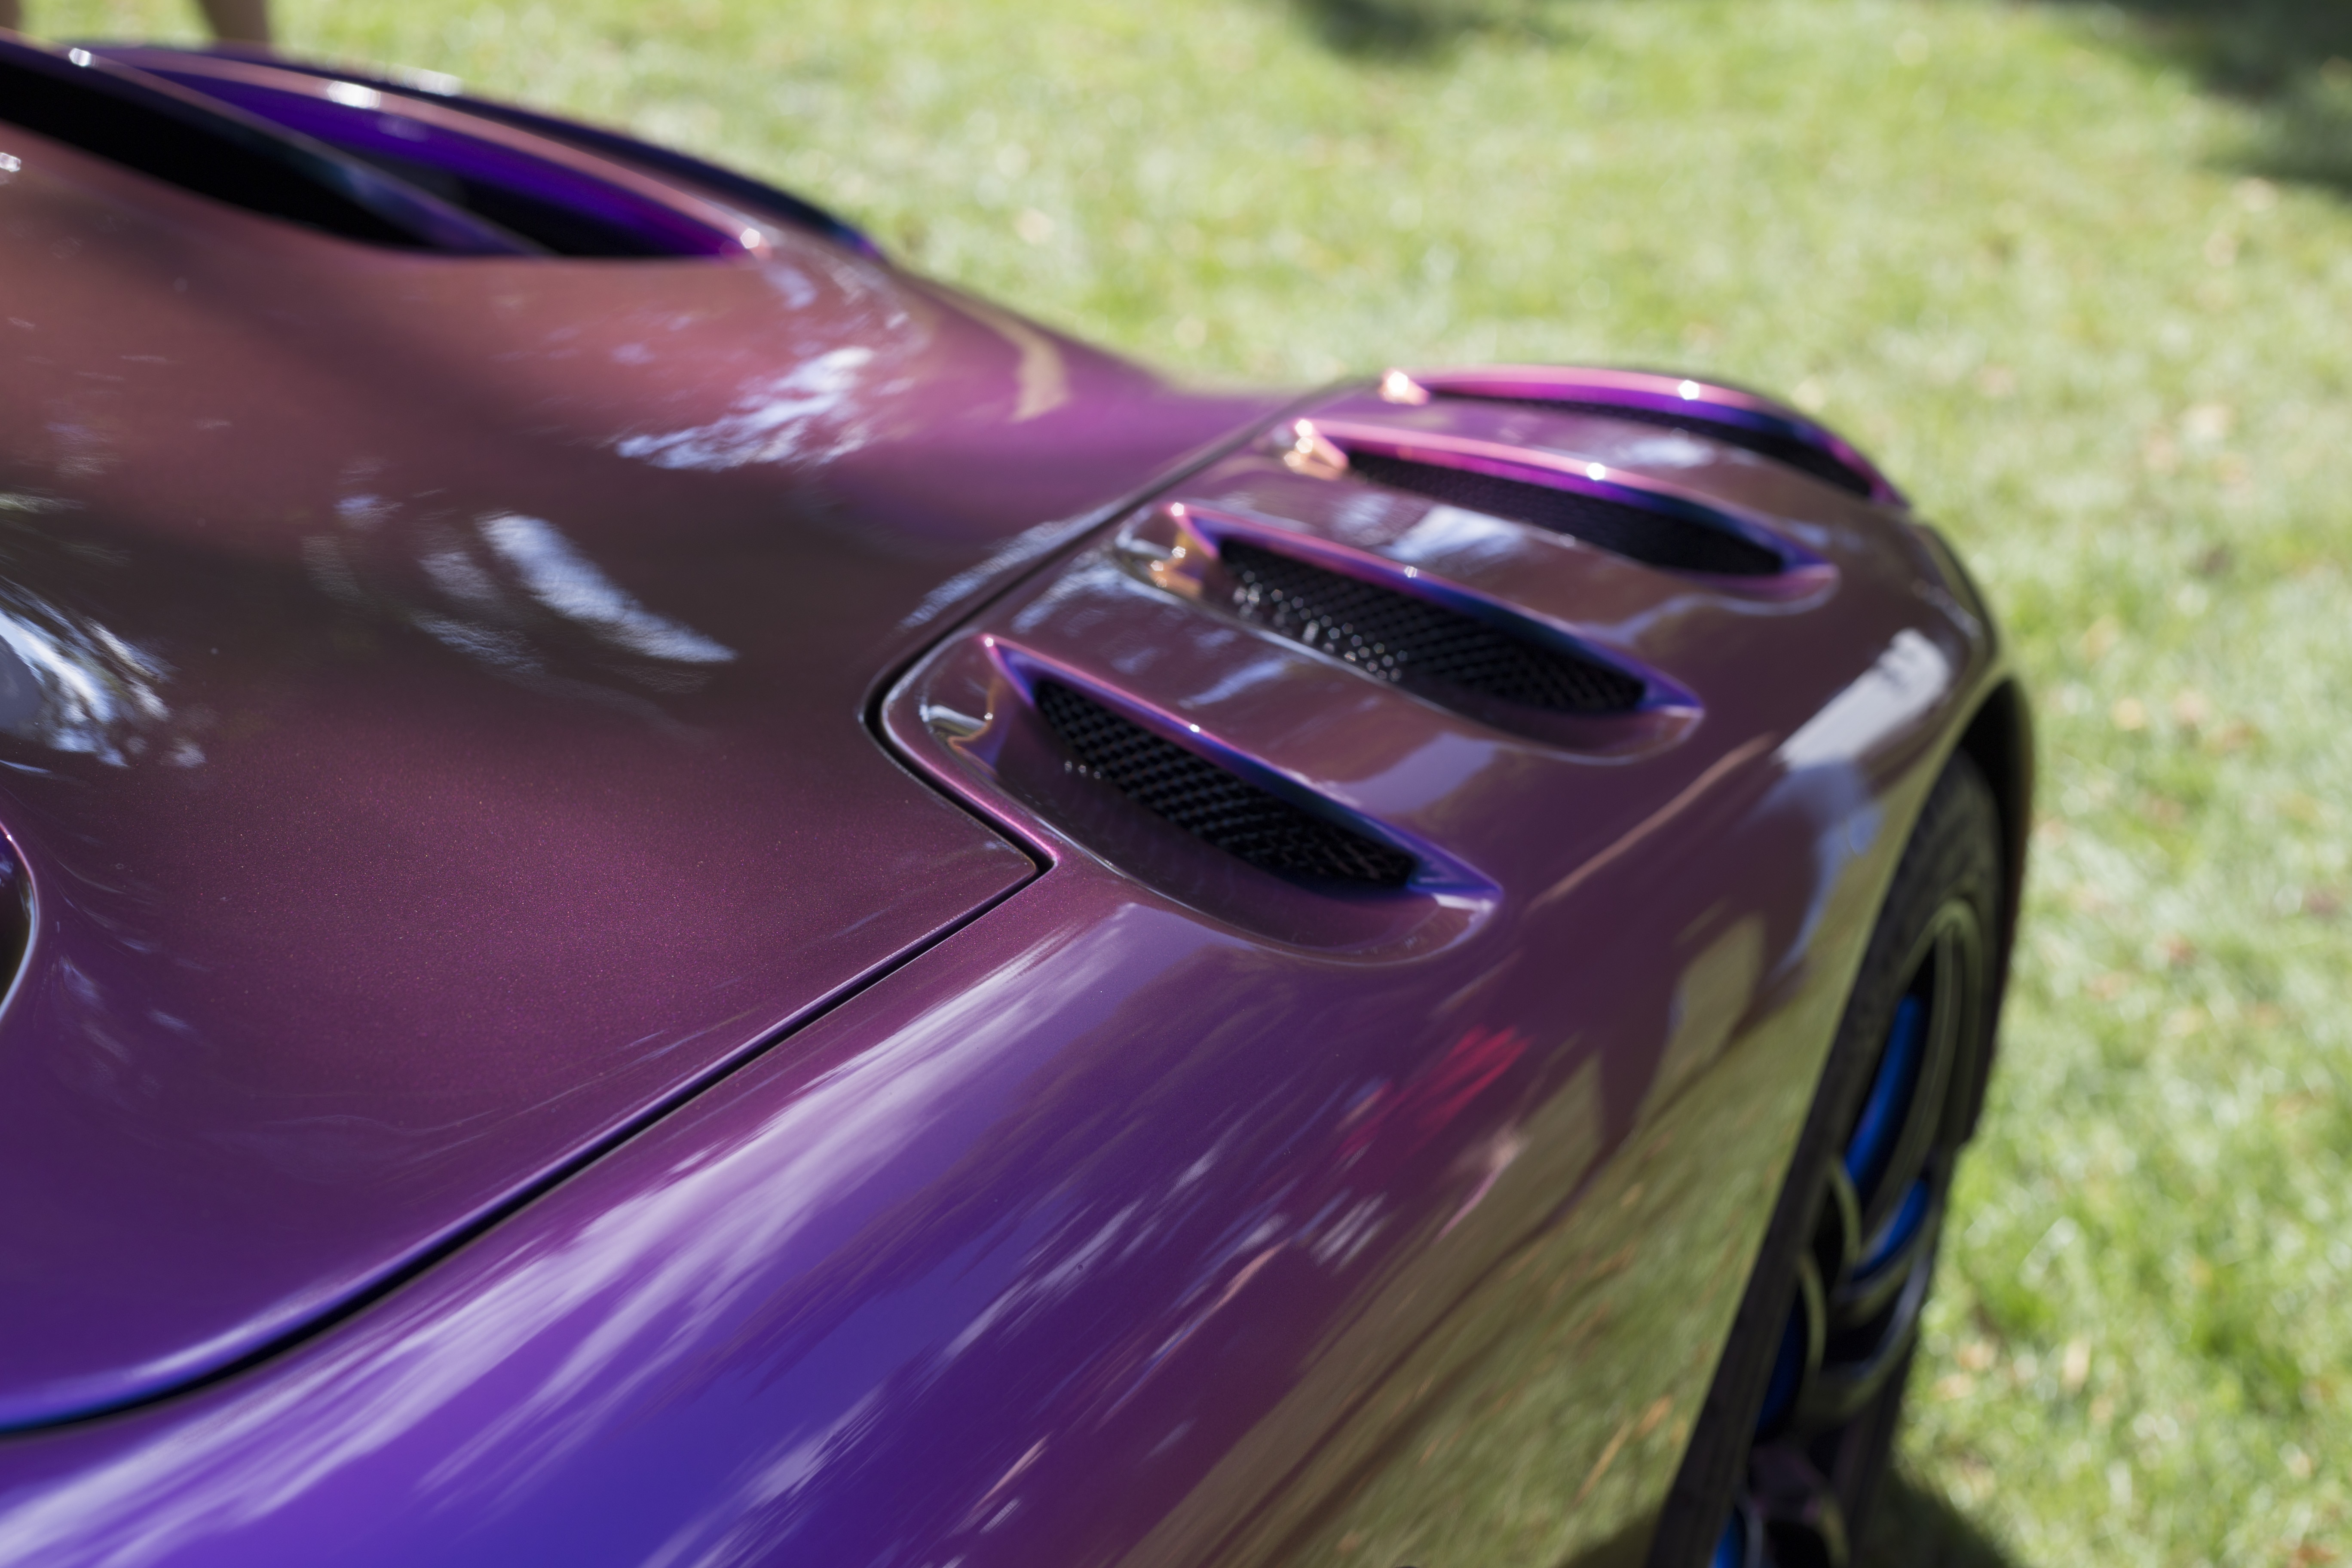 purple luxury car on green grass field